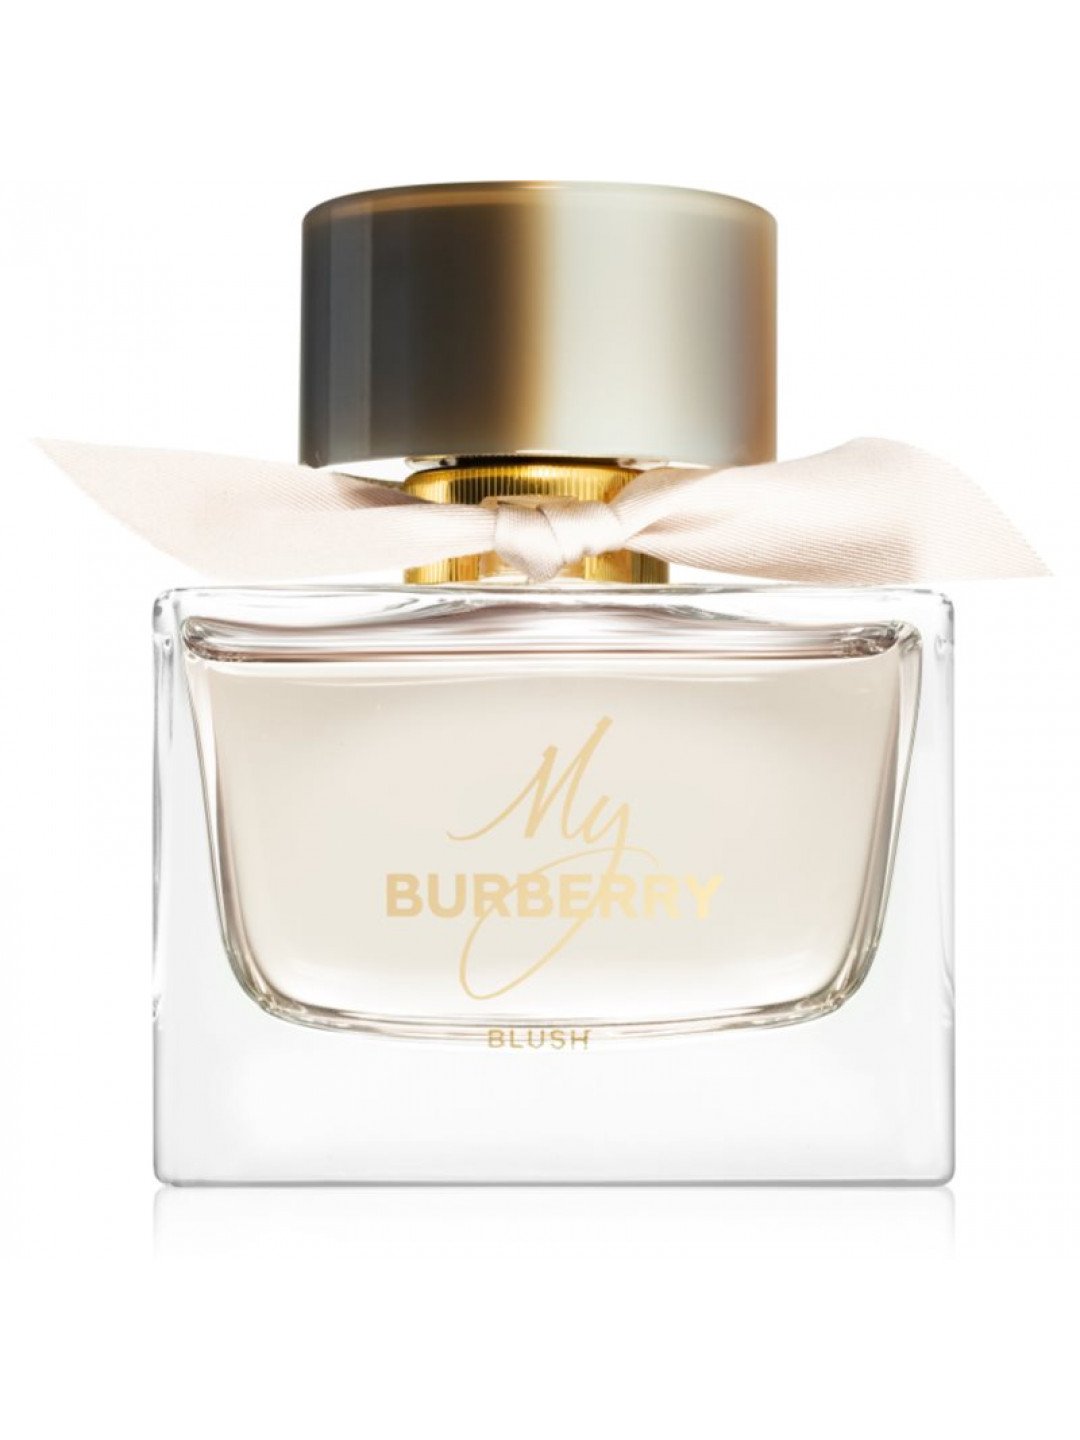 Burberry My Burberry Blush parfémovaná voda pro ženy 90 ml